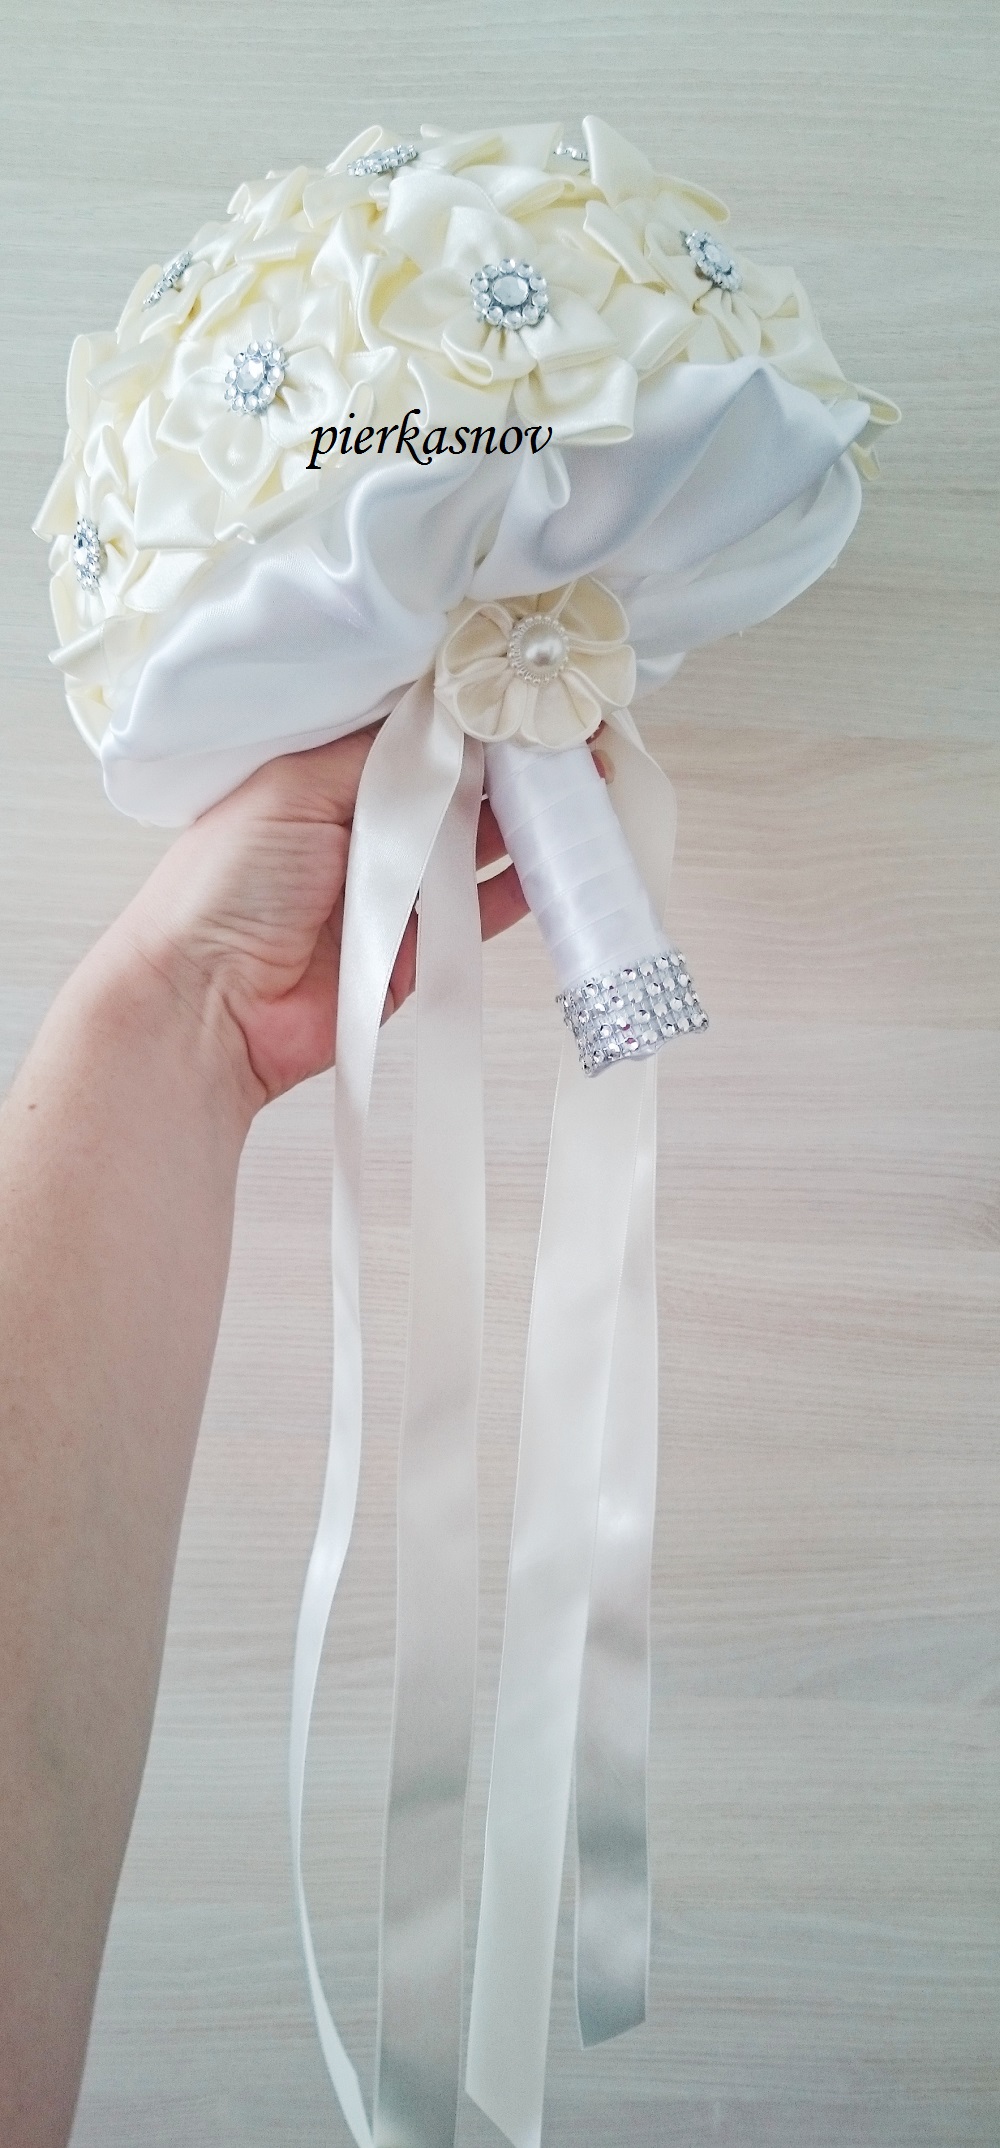 svadobná látková kytica bielo - krémová 20 cm